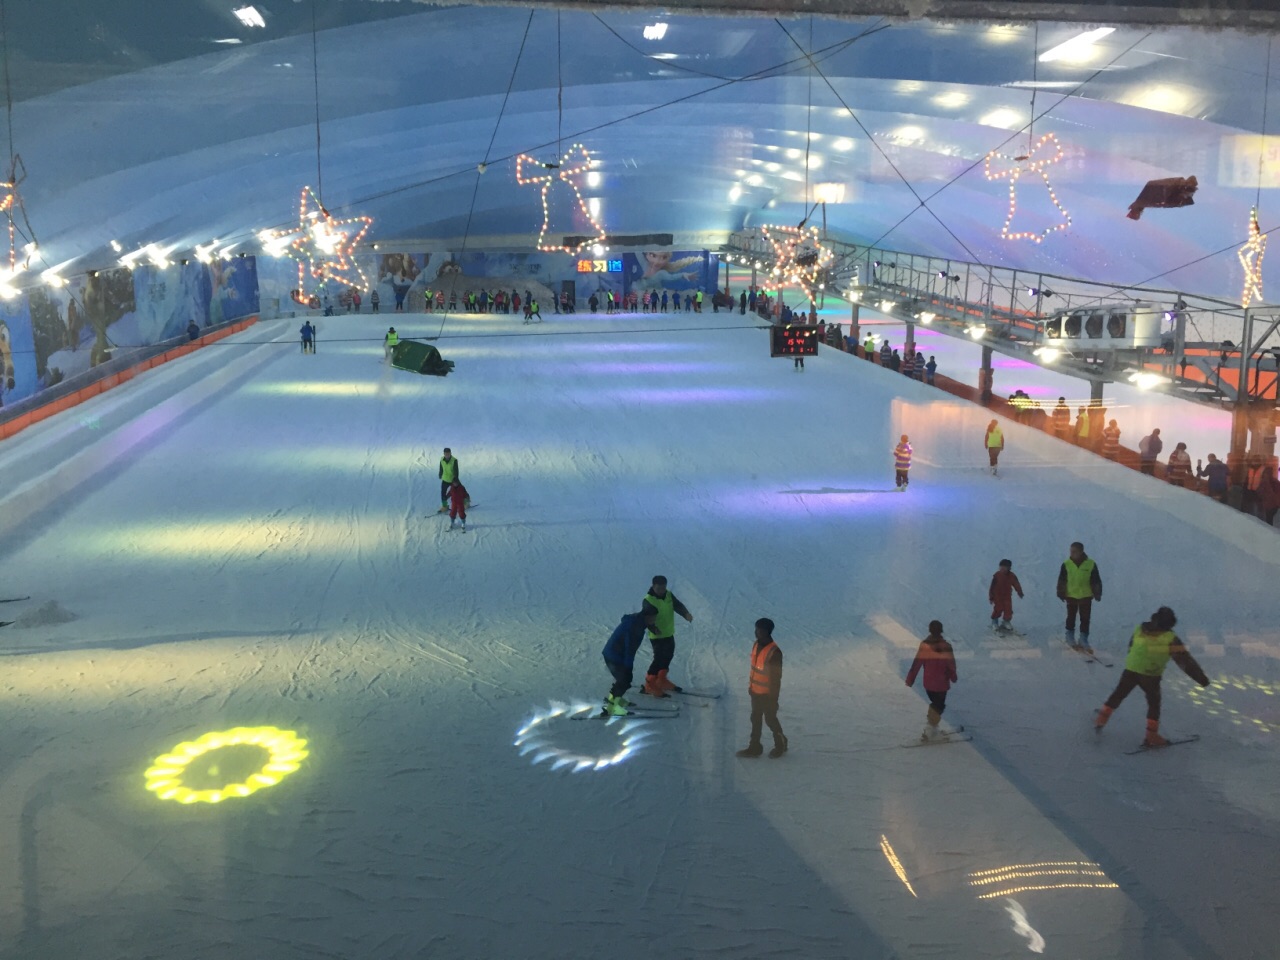 连云港东方乐园滑雪场图片